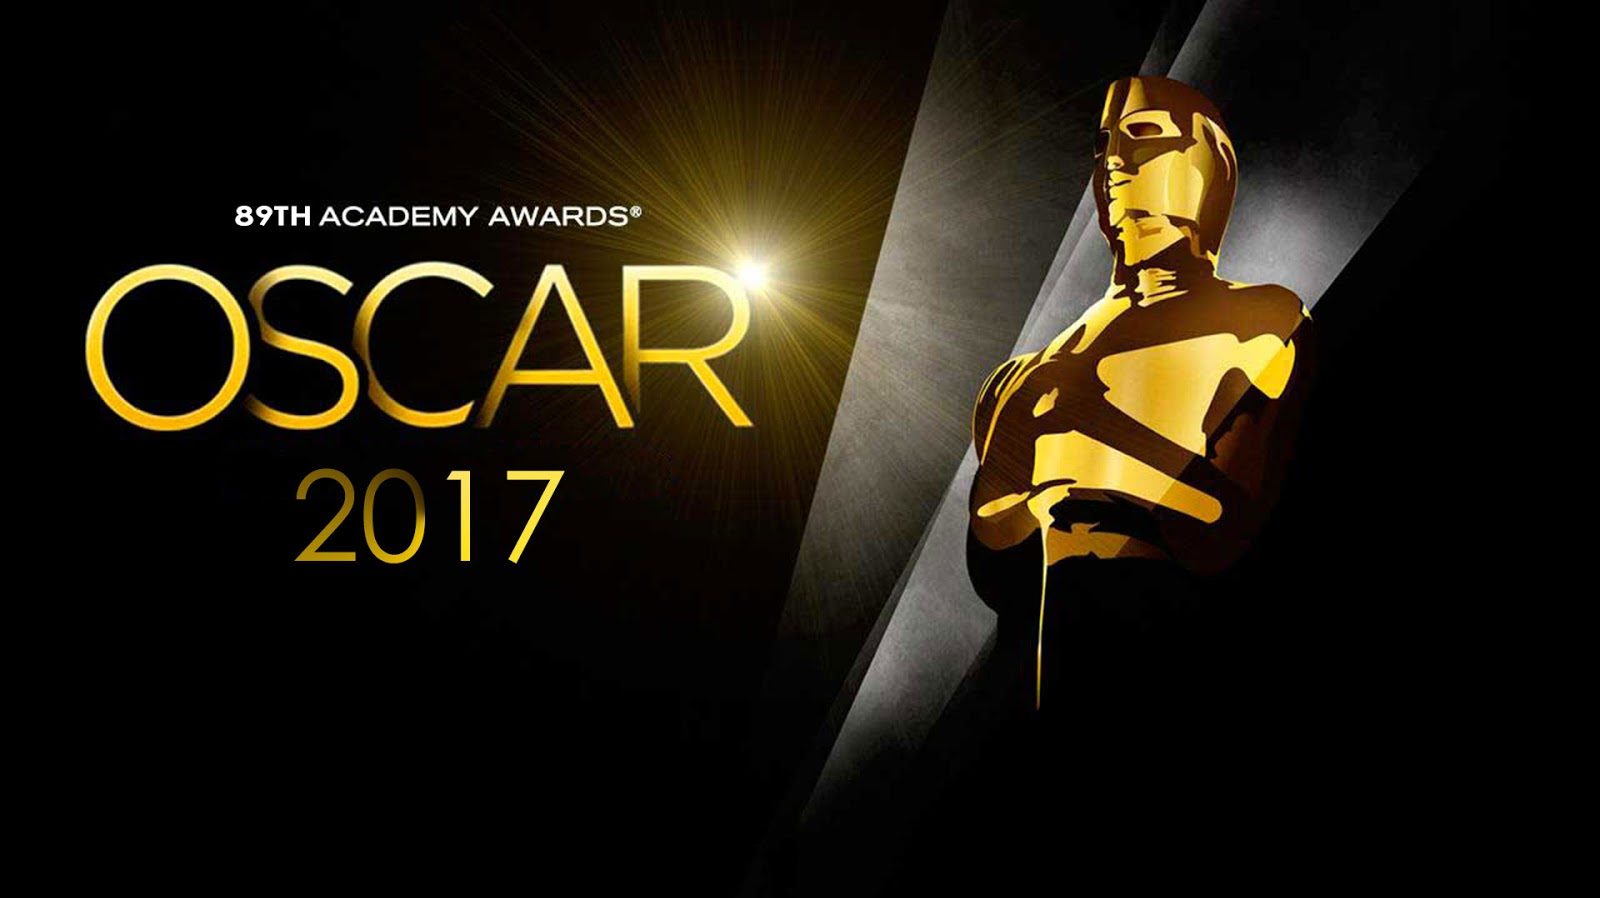 The 2017 Oscars